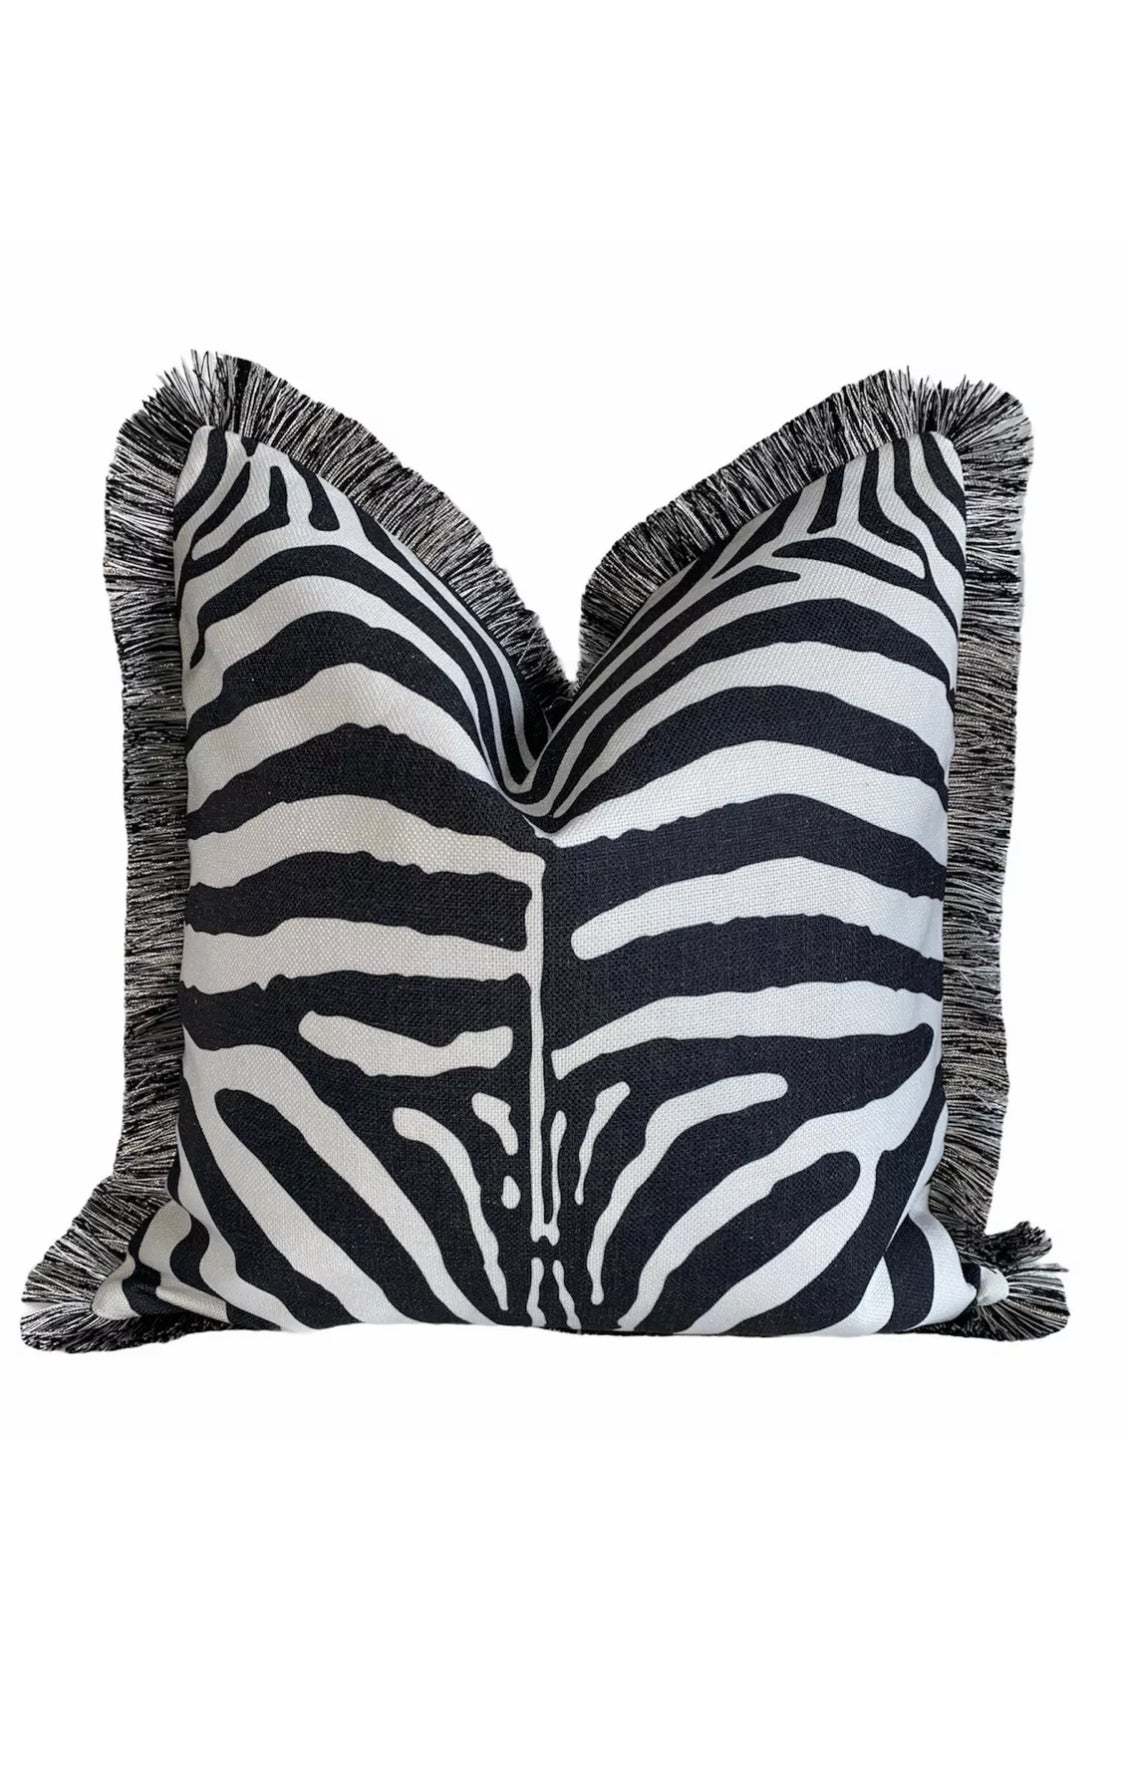 Klebefolie - Möbelfolie Zebra - schwarz weiss - 45 cm x 200 cm Wildlife